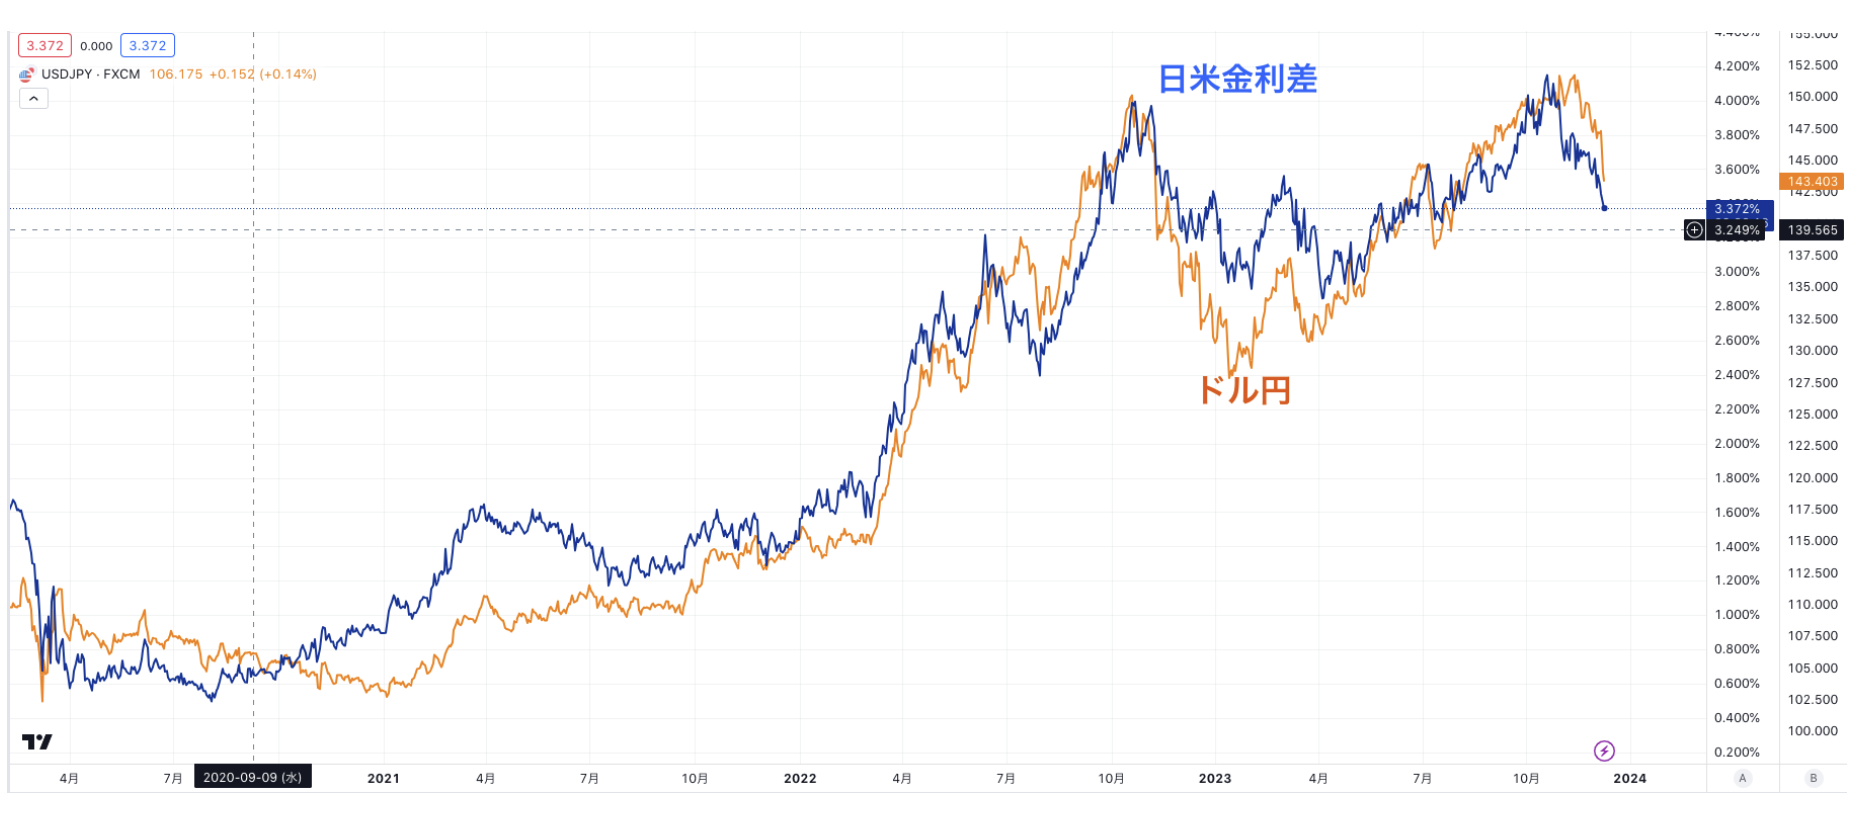 ドル円は日米金利差に連動する形で上昇